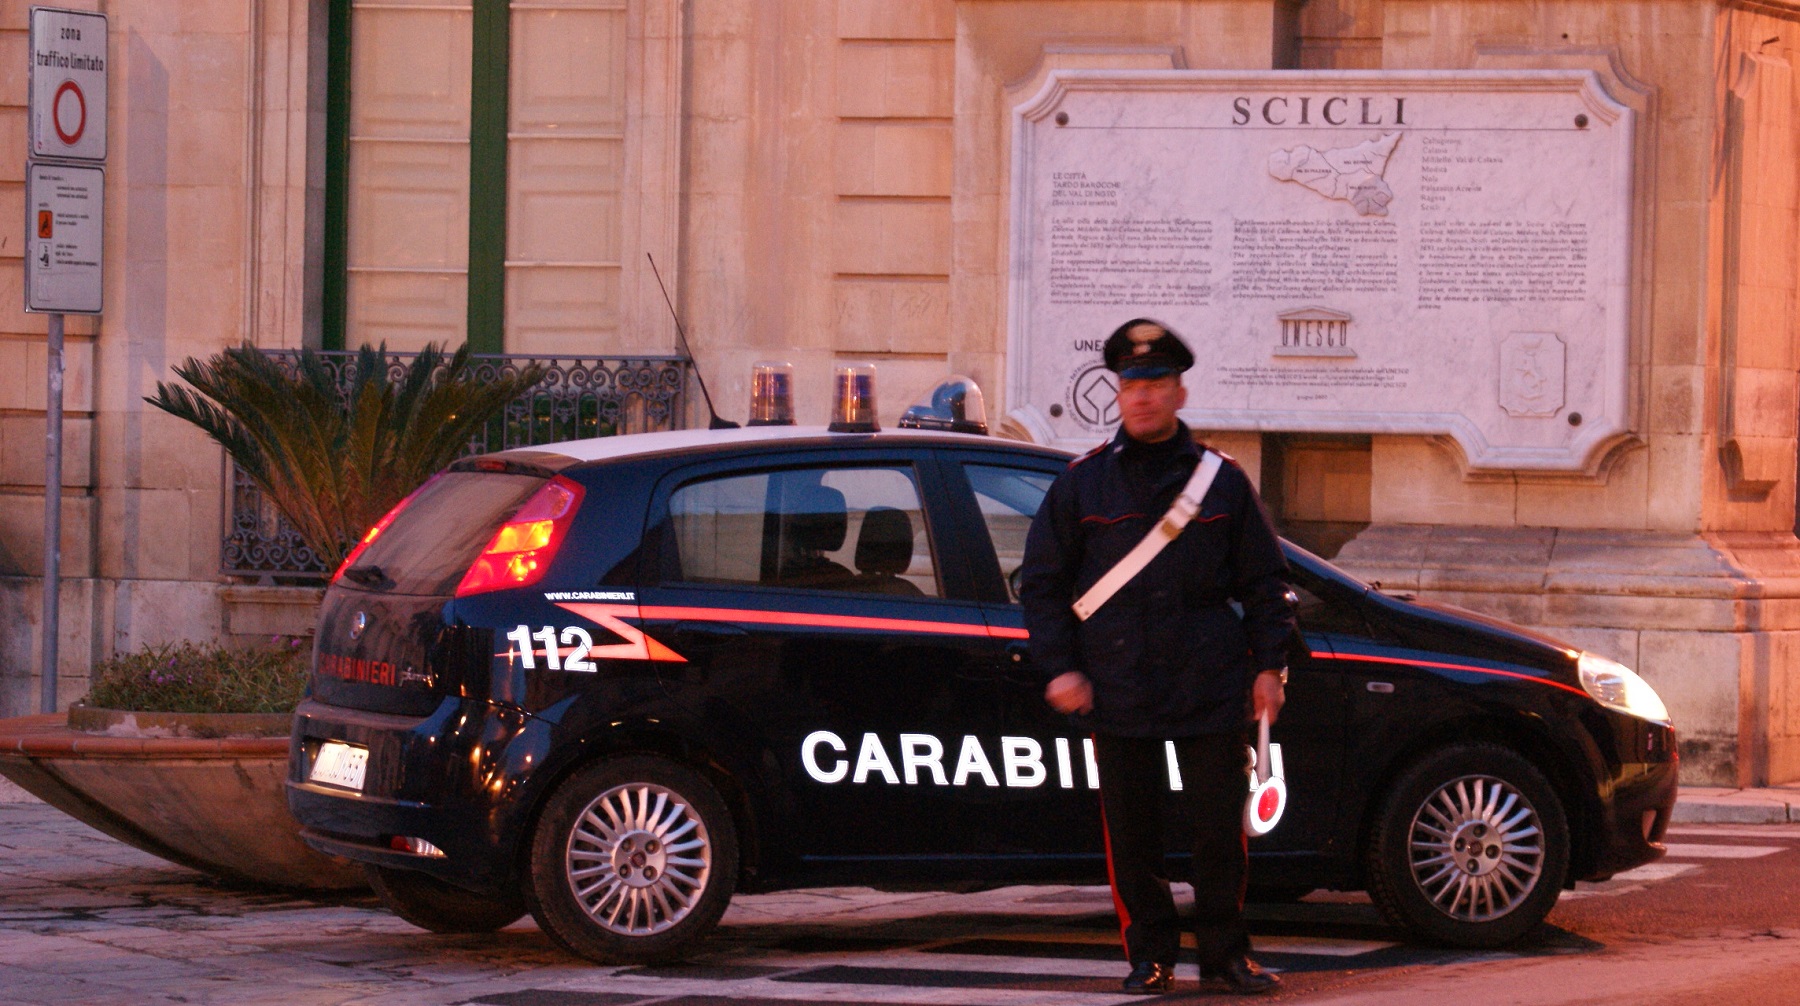  Scicli – Controlli antidroga dei Carabinieri, sospesa licenza ad un bar per 15 giorni